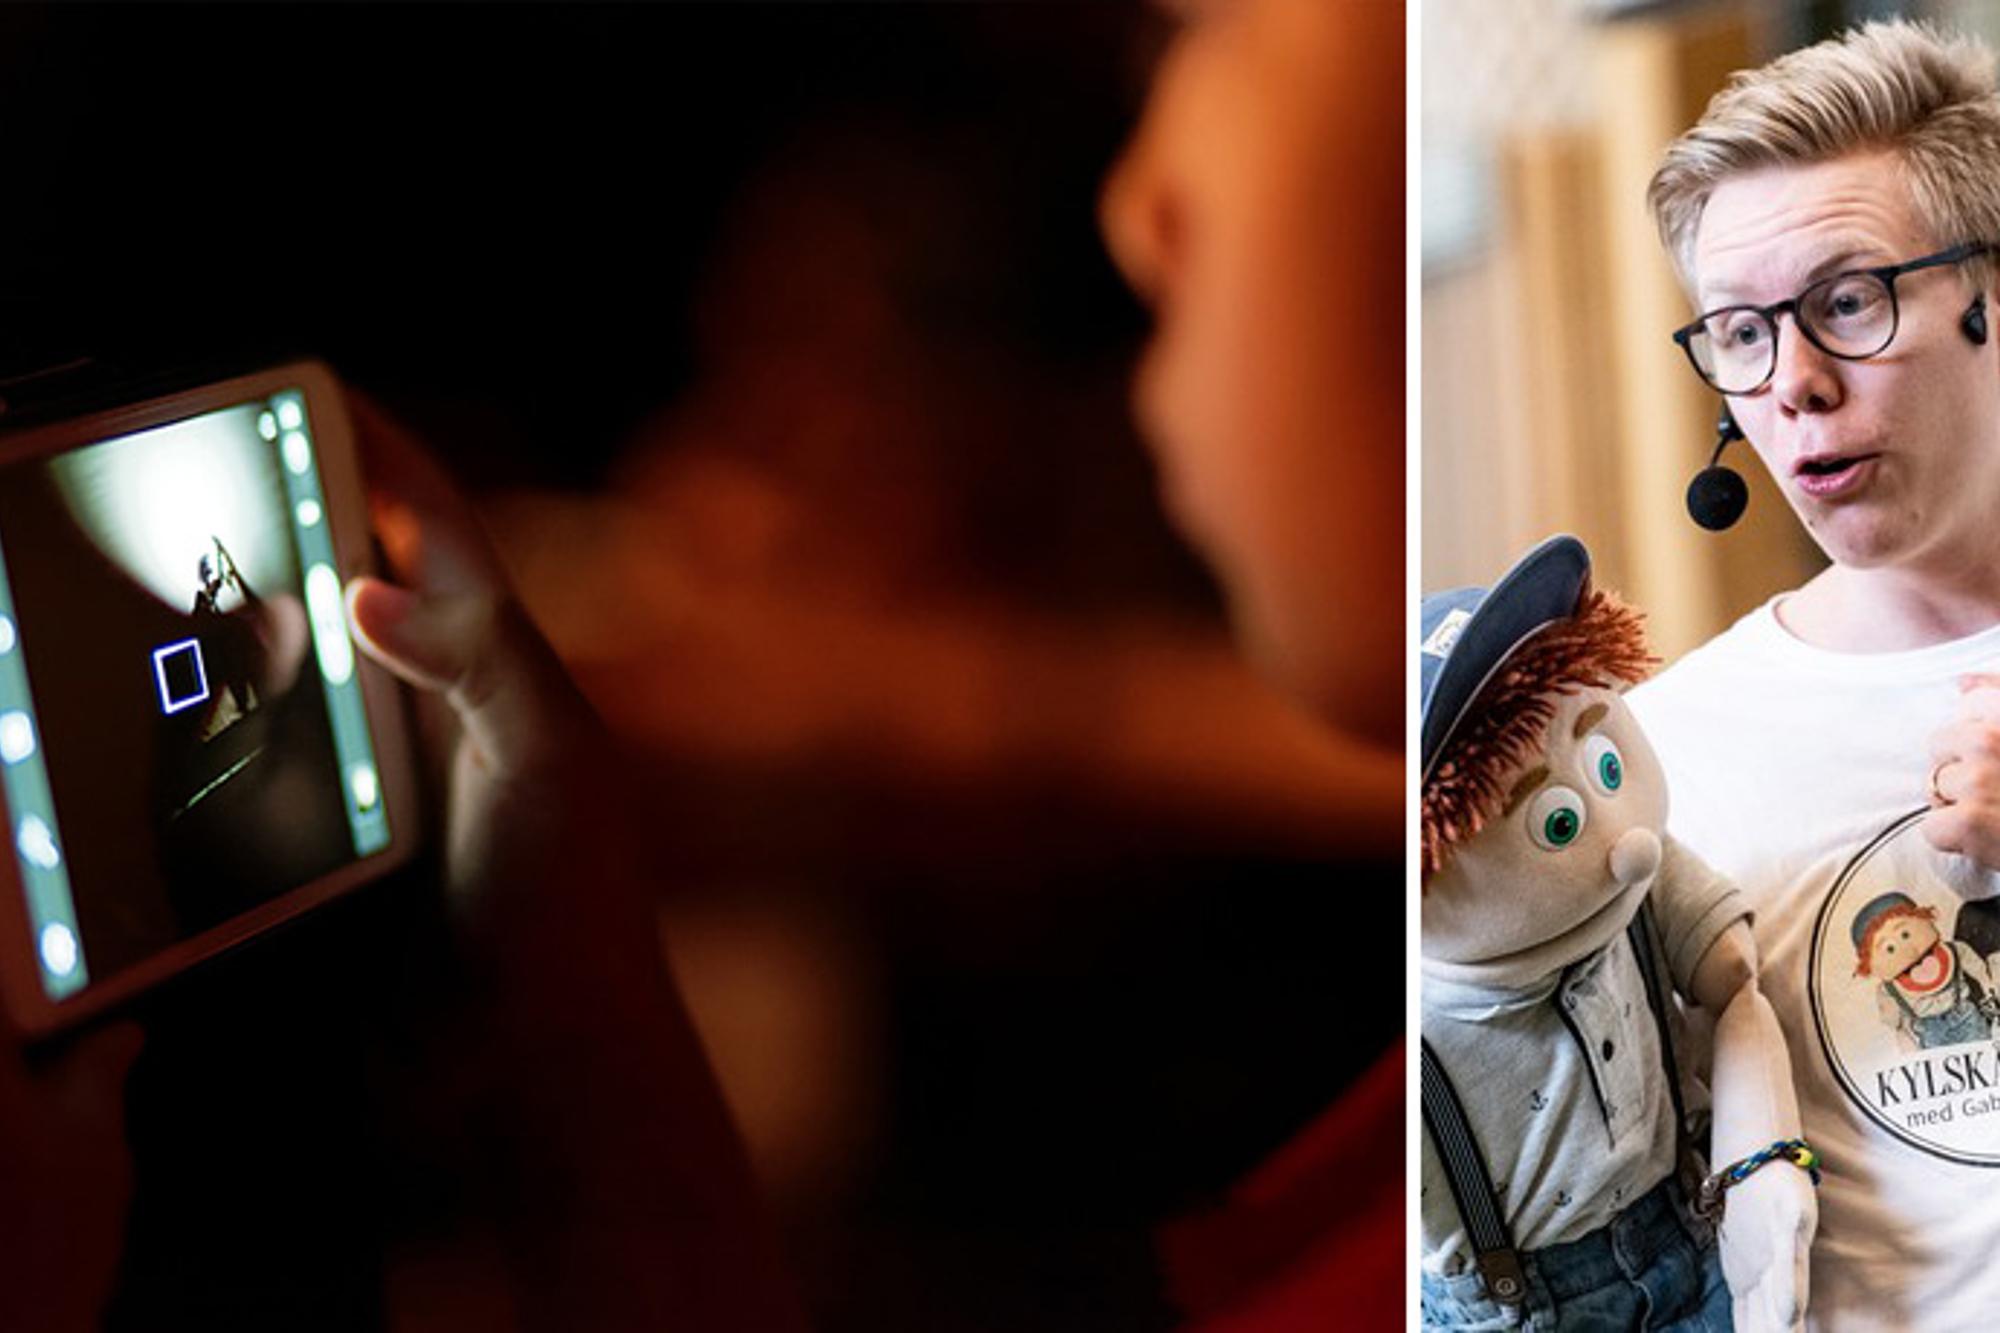 Till vänster: Ett barn som spelar ett spel på en mobiltelefon. Till höger: Gabriel Wahl och dockan Åsskar under en av deras föreställningar.